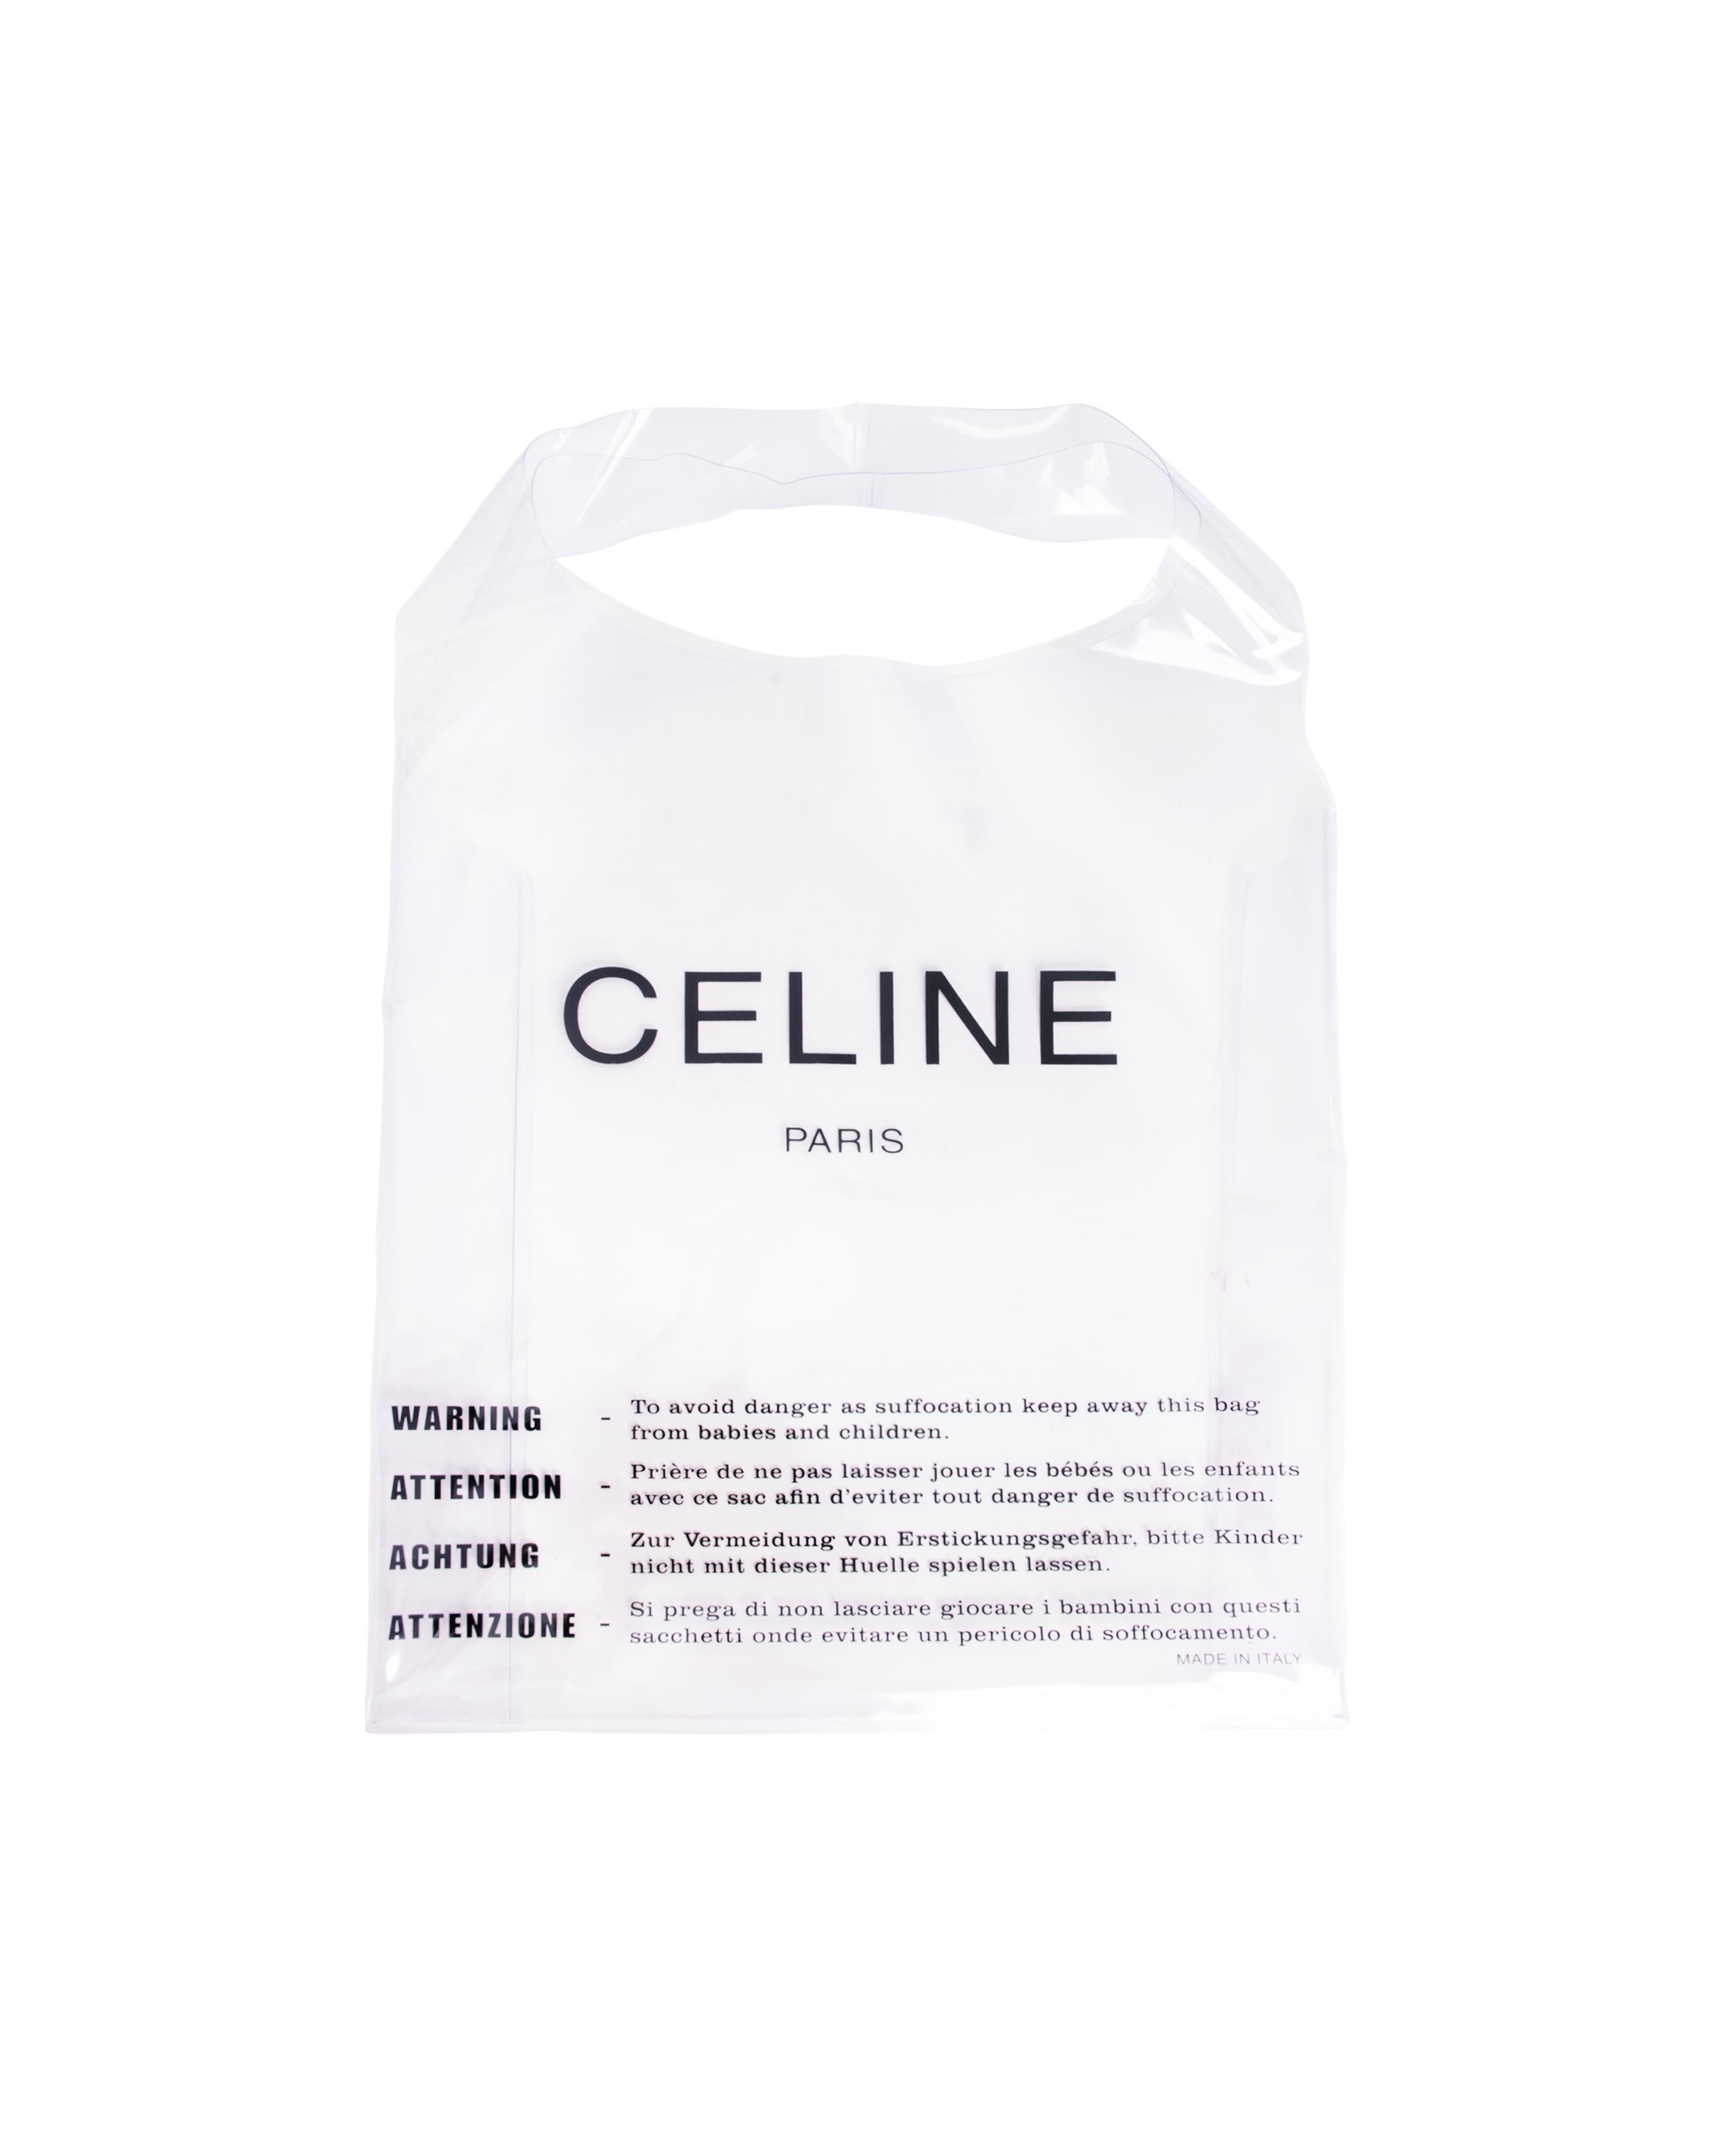 Gris S/S 2018 Old Céline by Phoebe Philo Sac à main en PVC avec pochette intérieure verte en vente